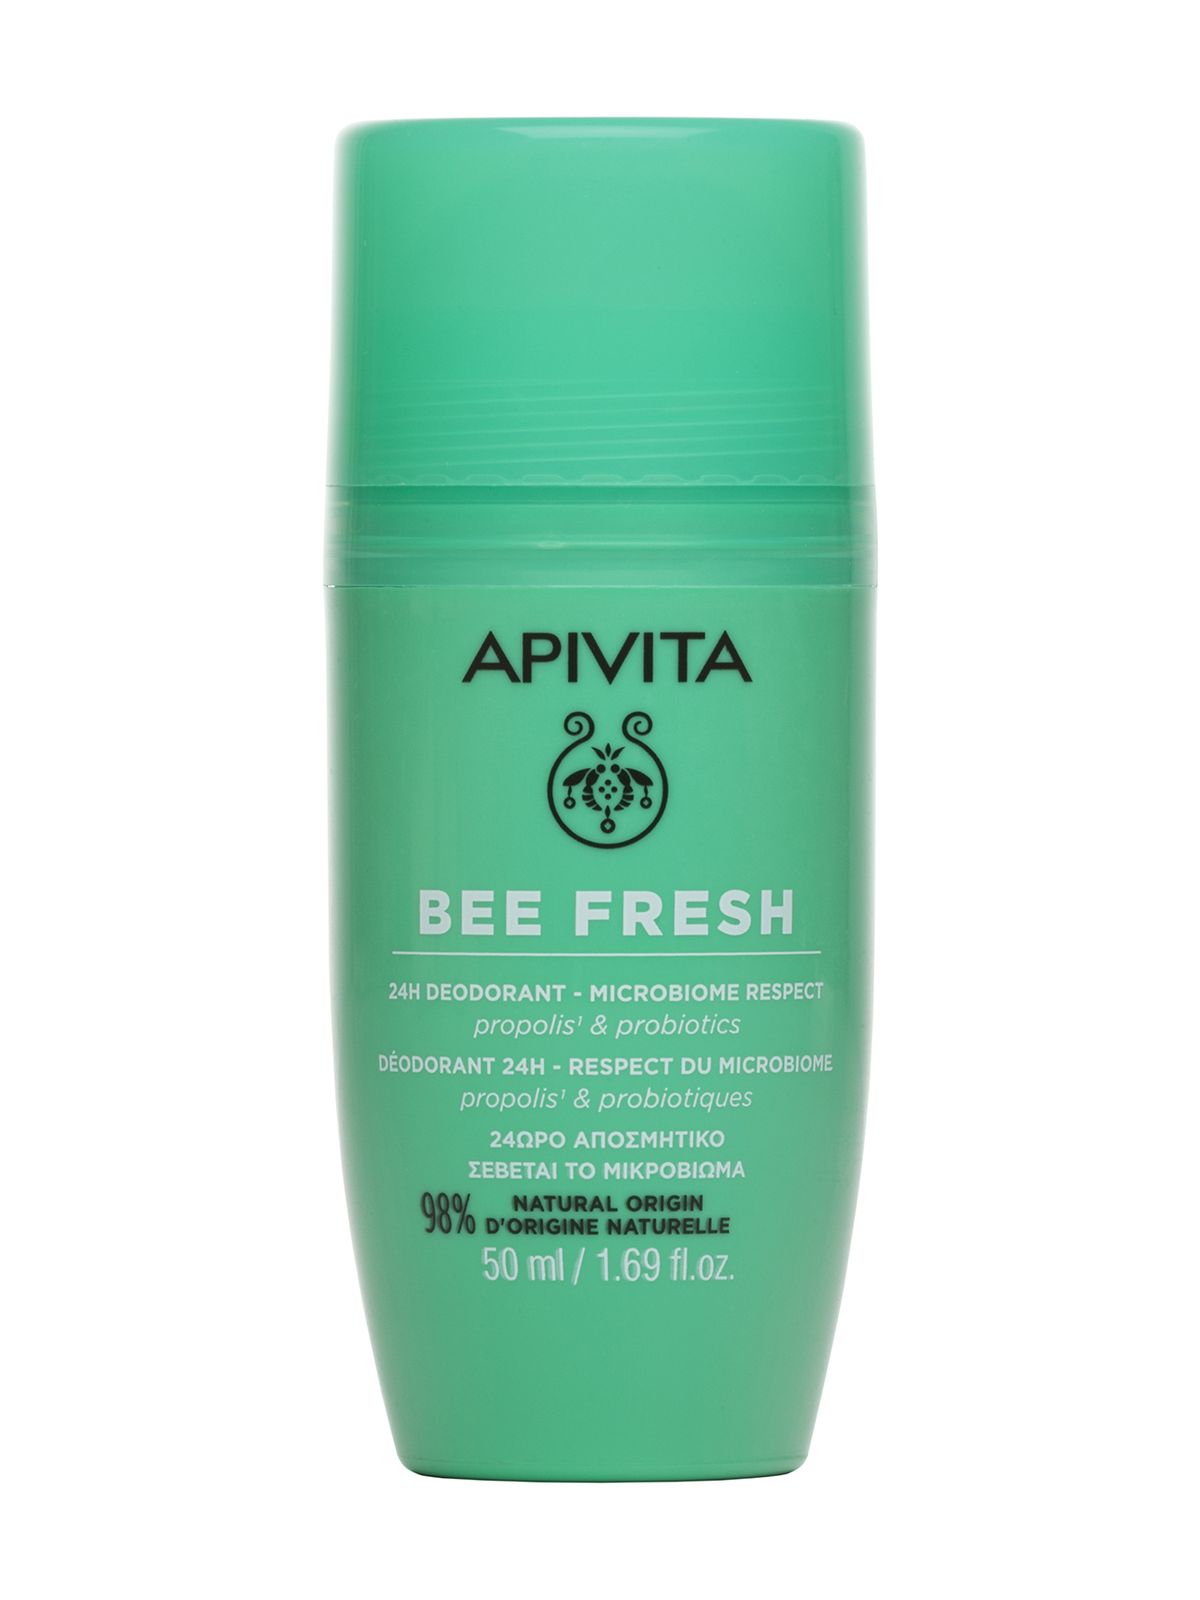 Дезодорант Apivita Bee Fresh 24H Deodorant Microbiome Respect Propolis & Probiotics pure deo co дезодорант стик без солей алюминия с лимонным миртом